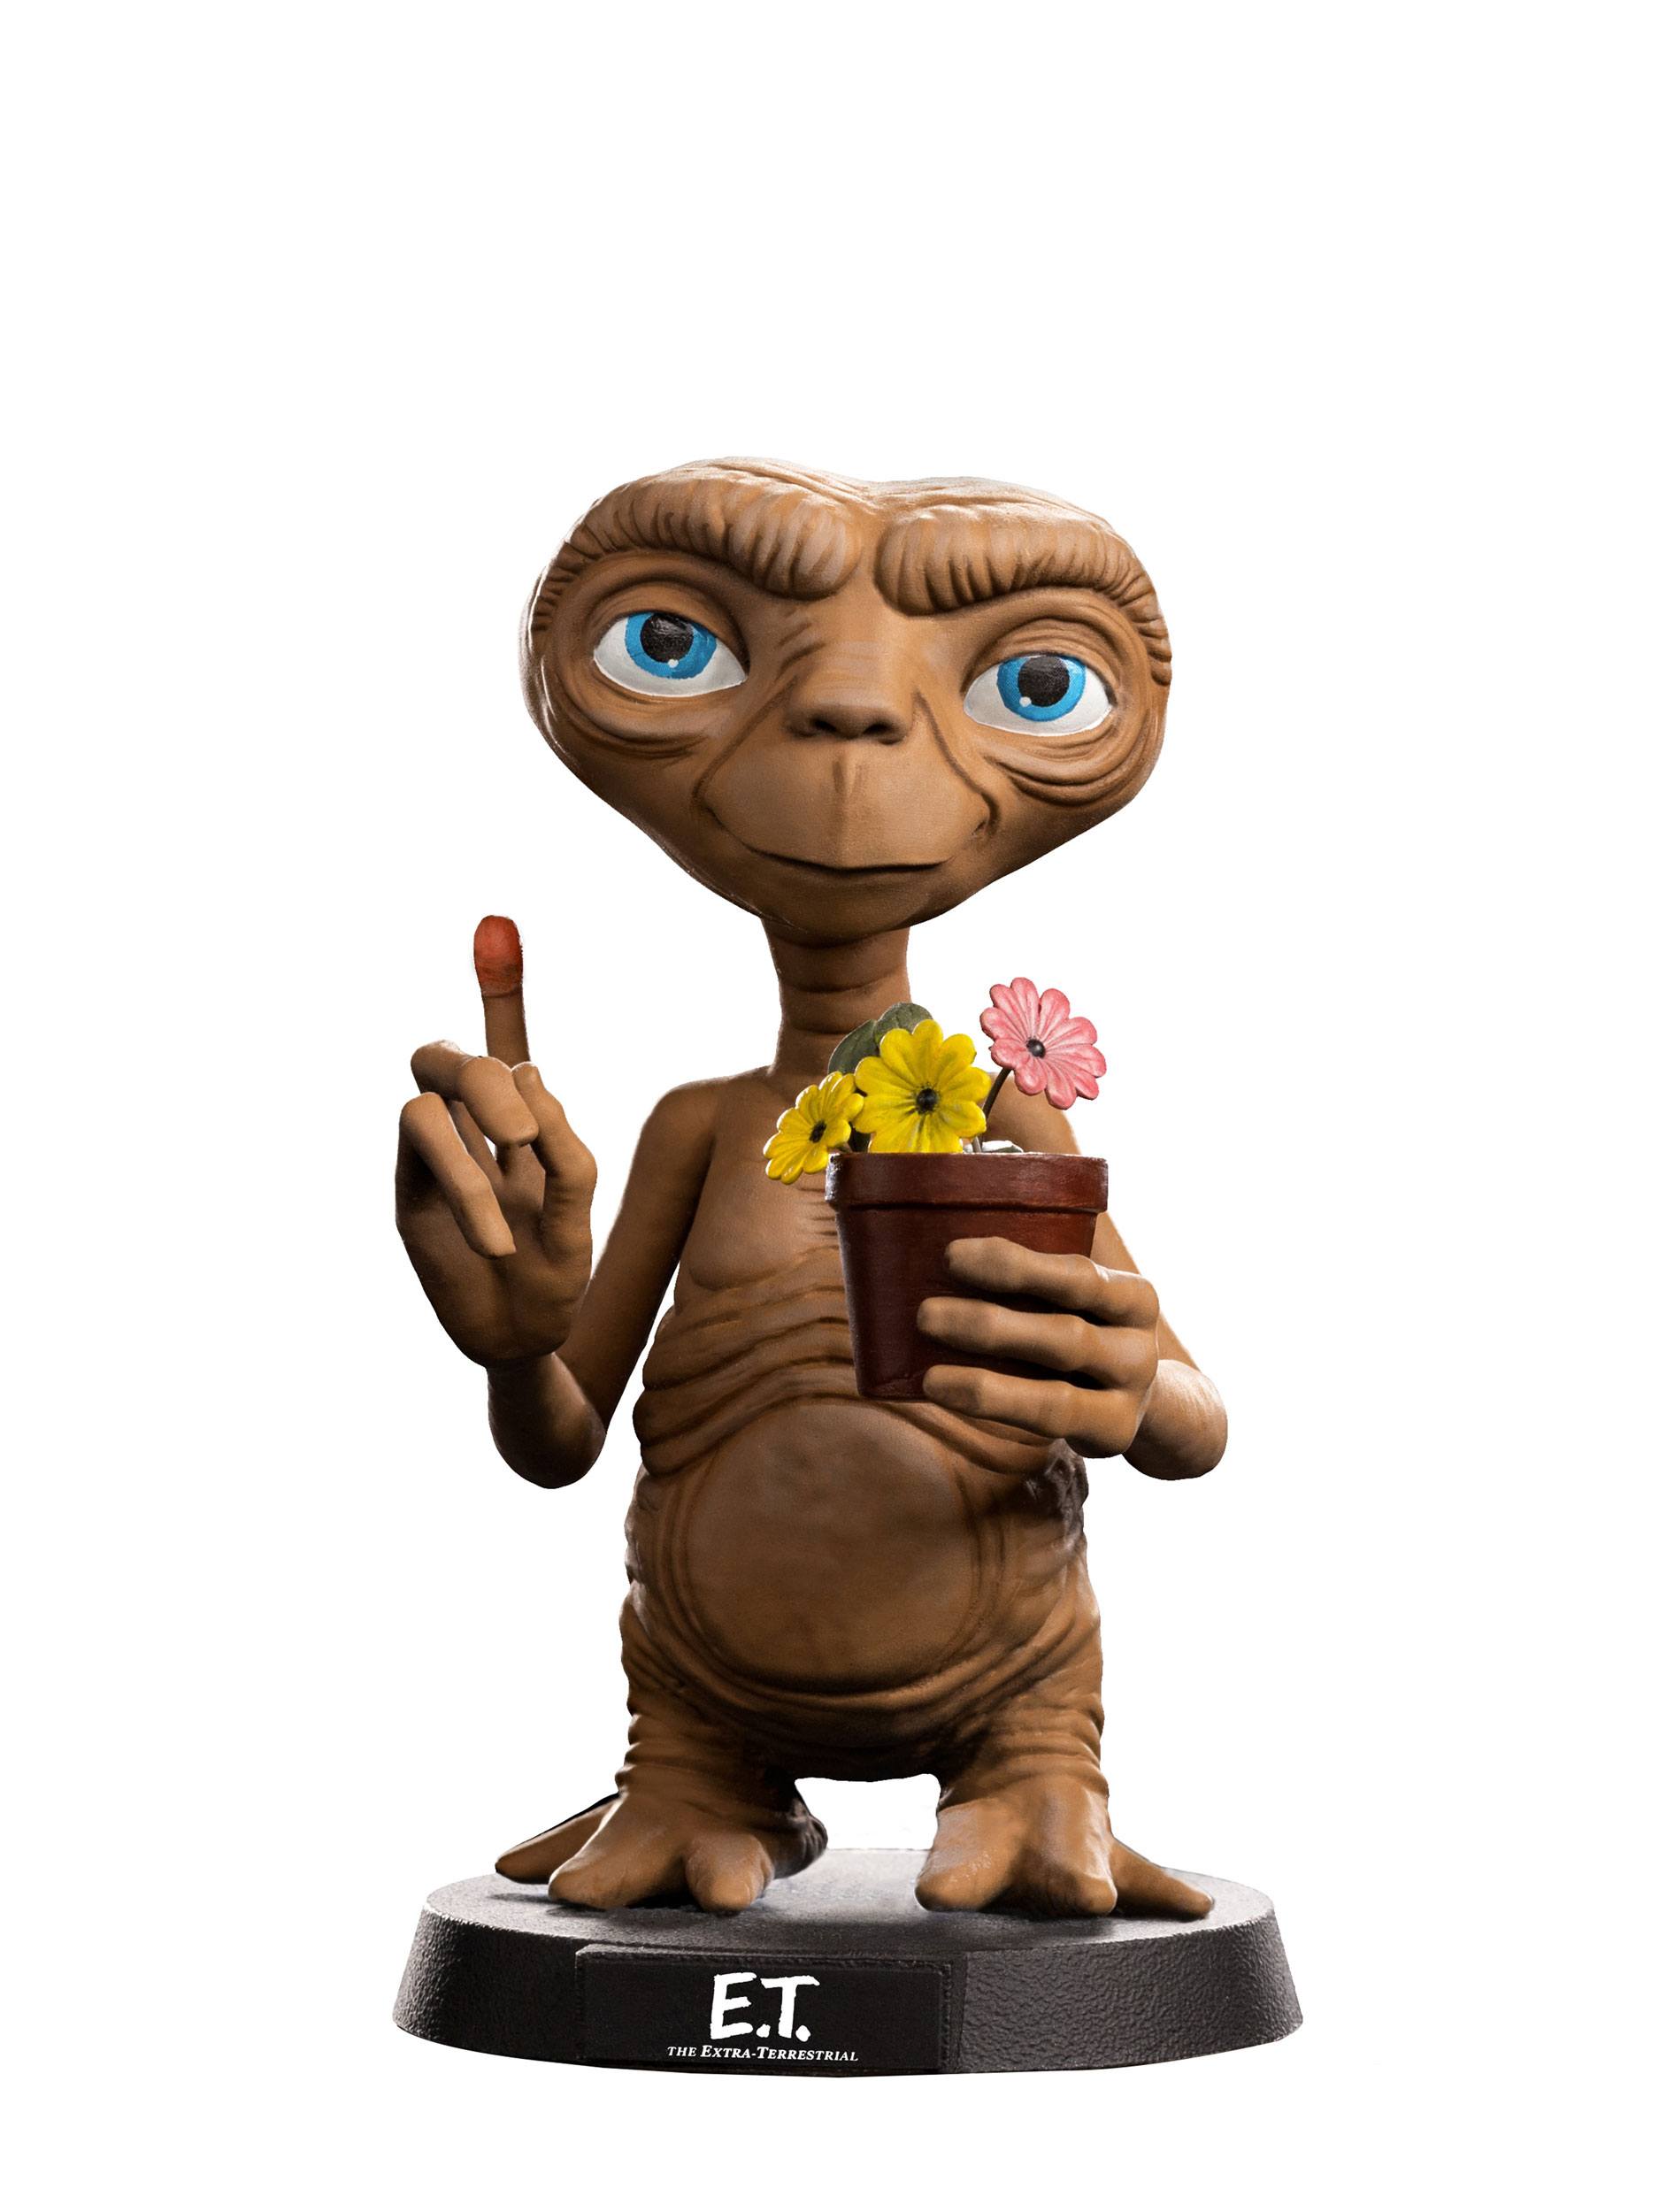 Figurine Mini Co. E.T., l'extra-terrestre Iron Studios | DC Comics figurine Funko